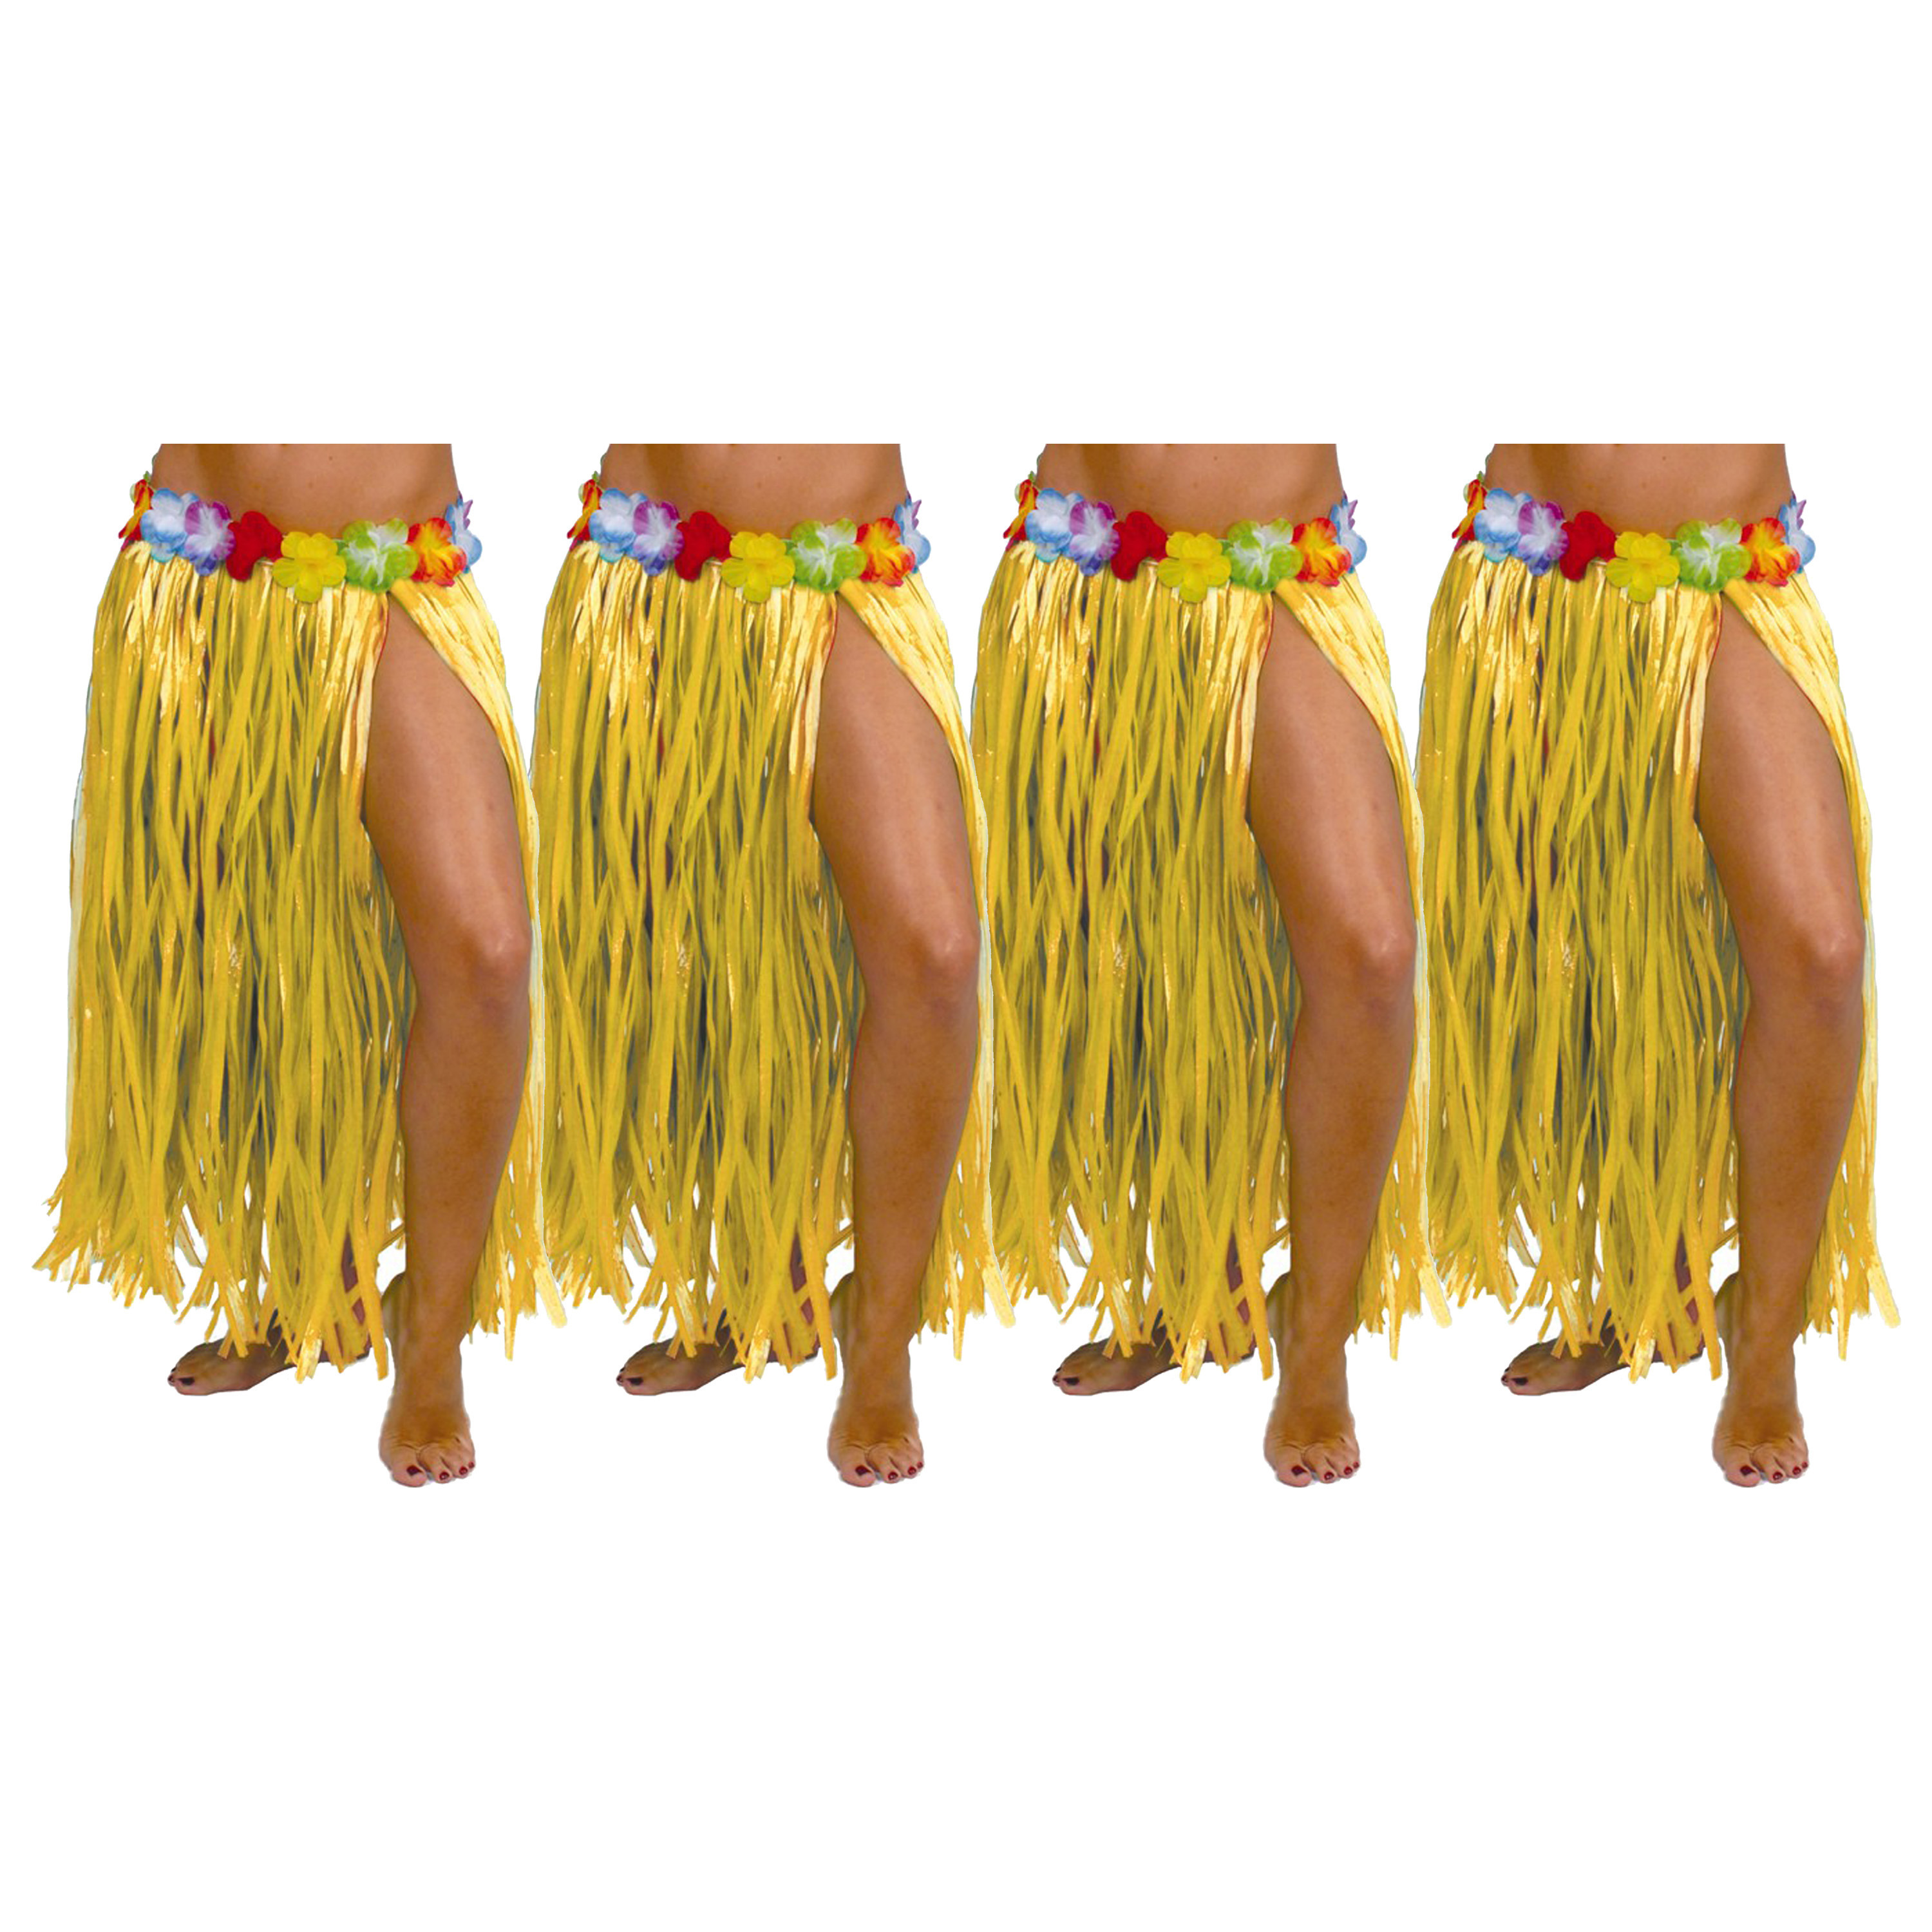 Hawaii verkleed rokje 4x voor volwassenen geel 75 cm rieten hoela rokje tropisch